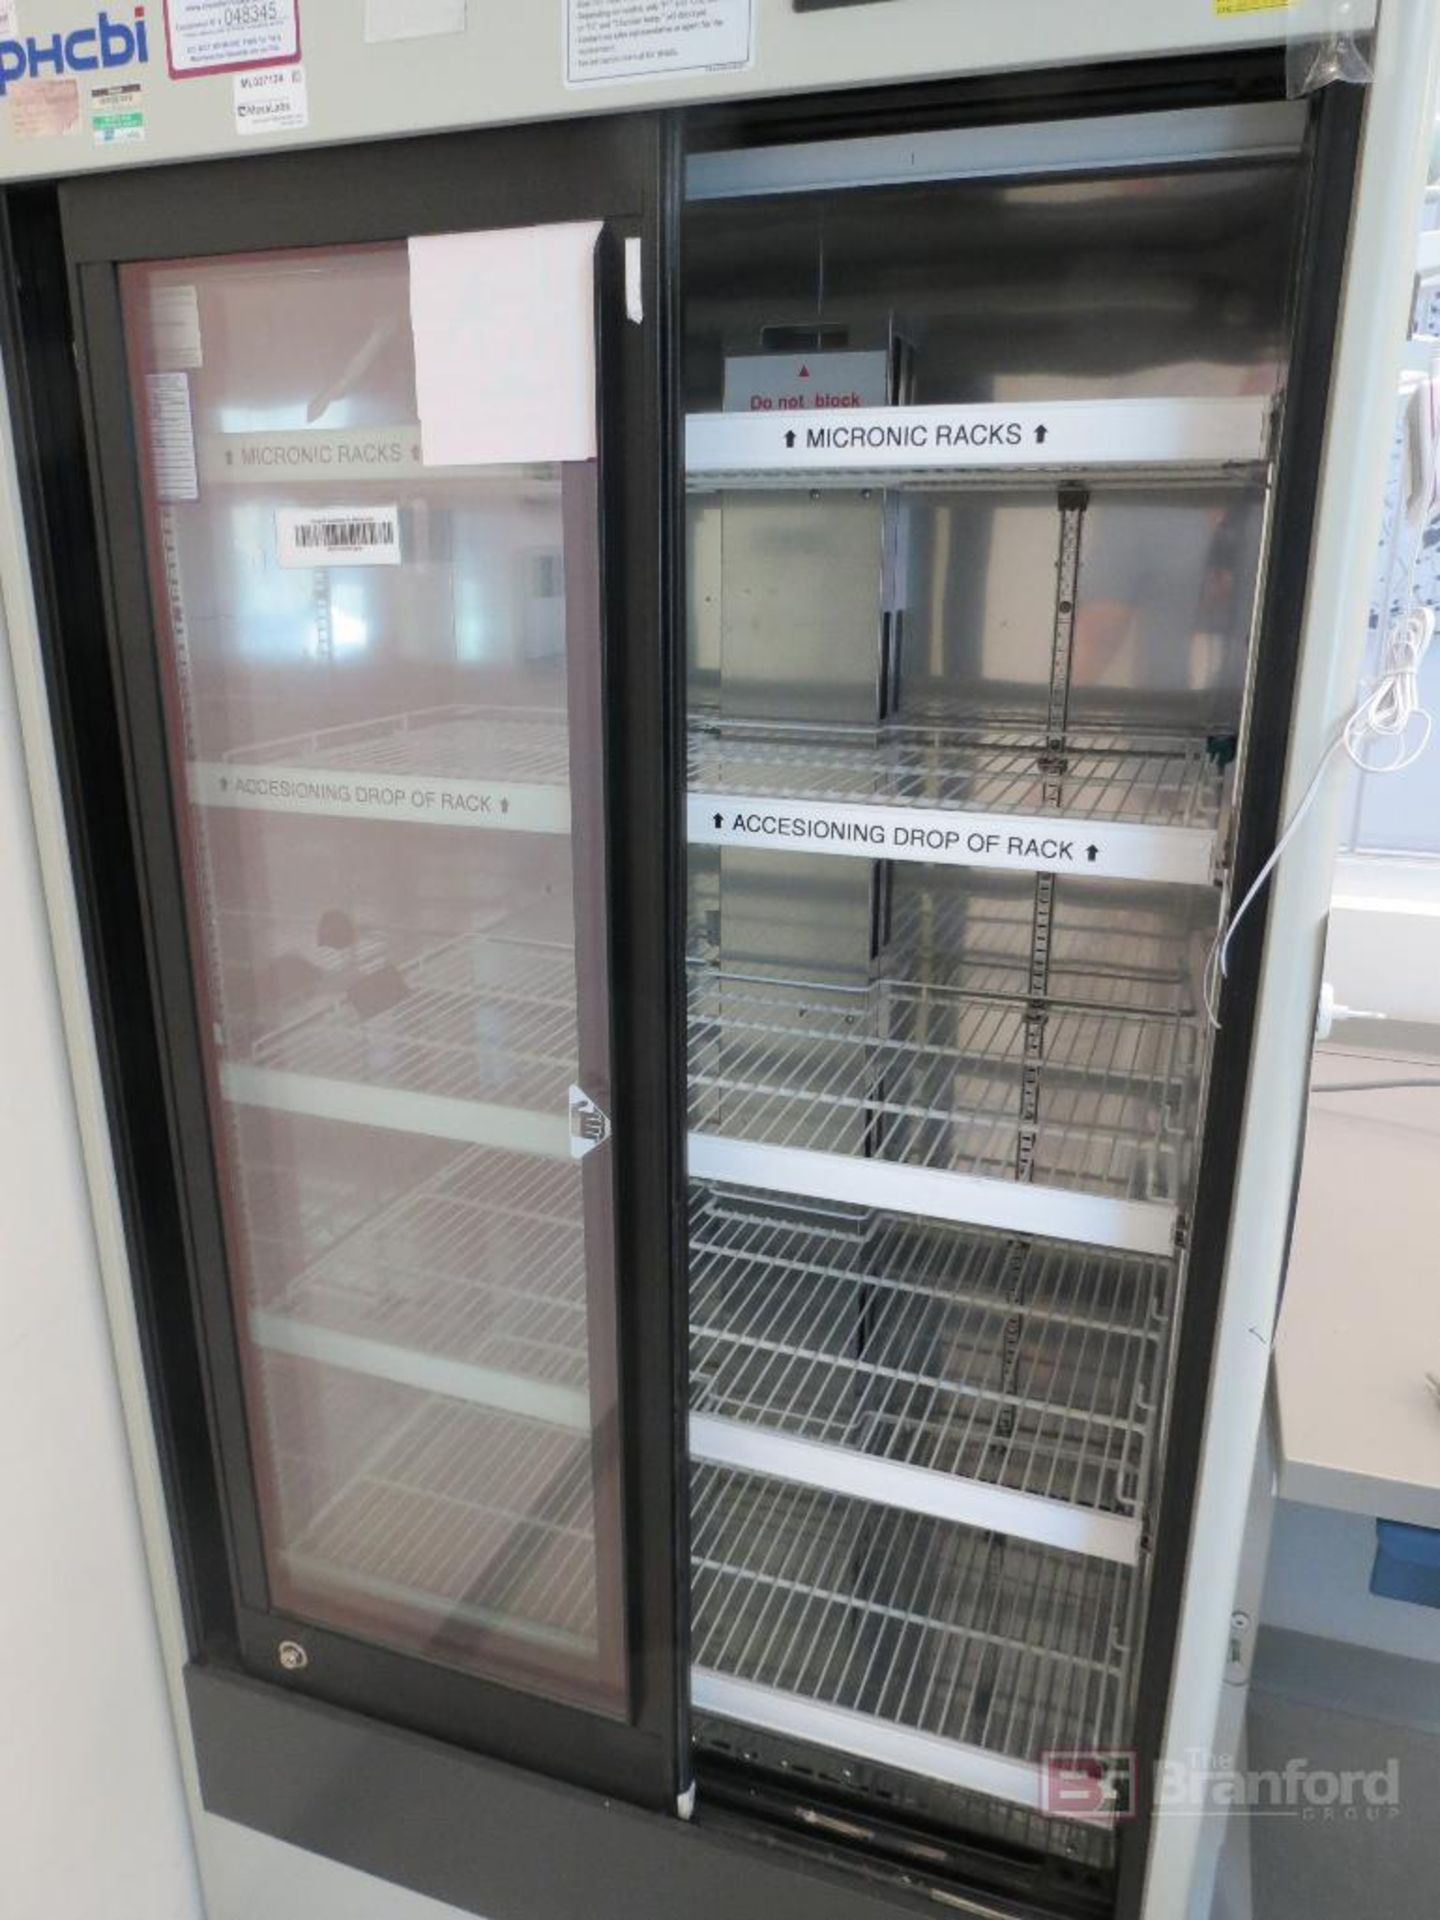 PHCbi MPR-514-PA Sliding Glass Door Pharmaceutical Refrigerator - Image 3 of 4